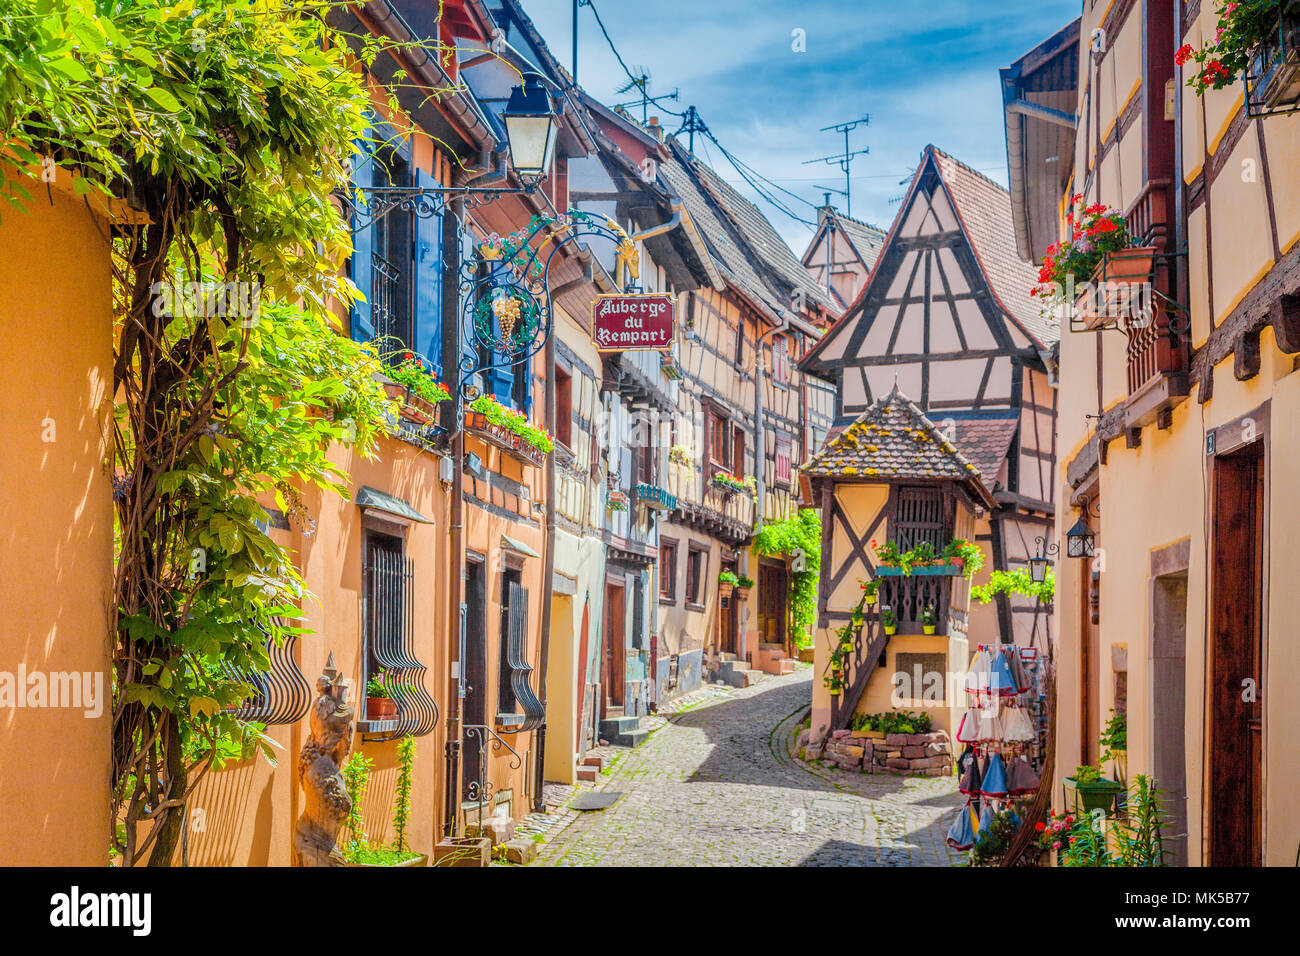 Scène de rue de charme avec ses maisons colorées dans la ville historique d'Eguisheim sur une belle journée ensoleillée en été, Alsace, France Banque D'Images